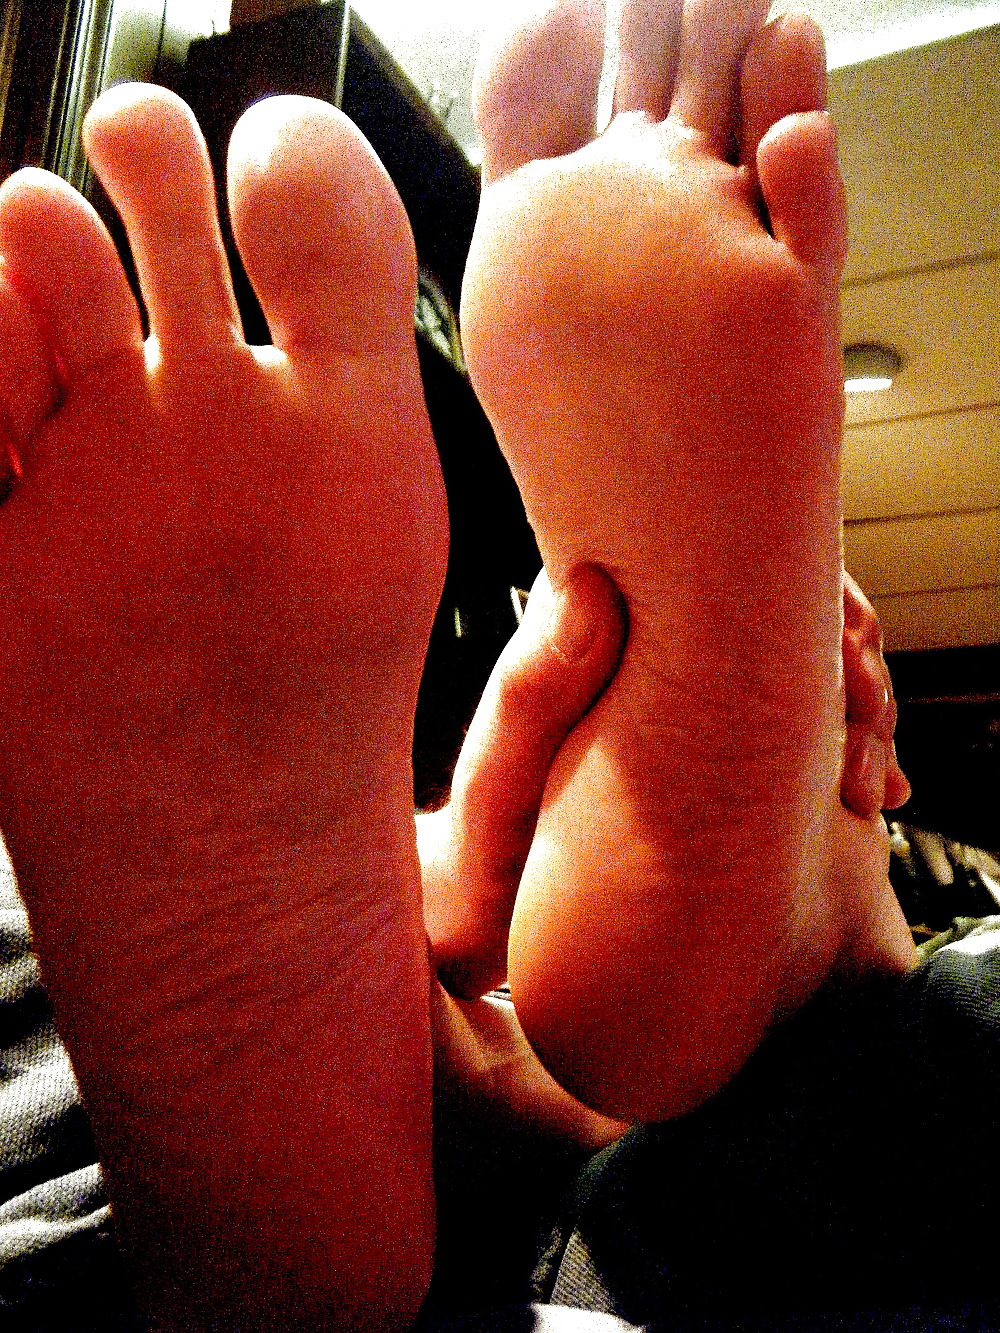 Altri scatti candidi dei piedi e delle dita dei piedi squisiti di mia moglie
 #1762240